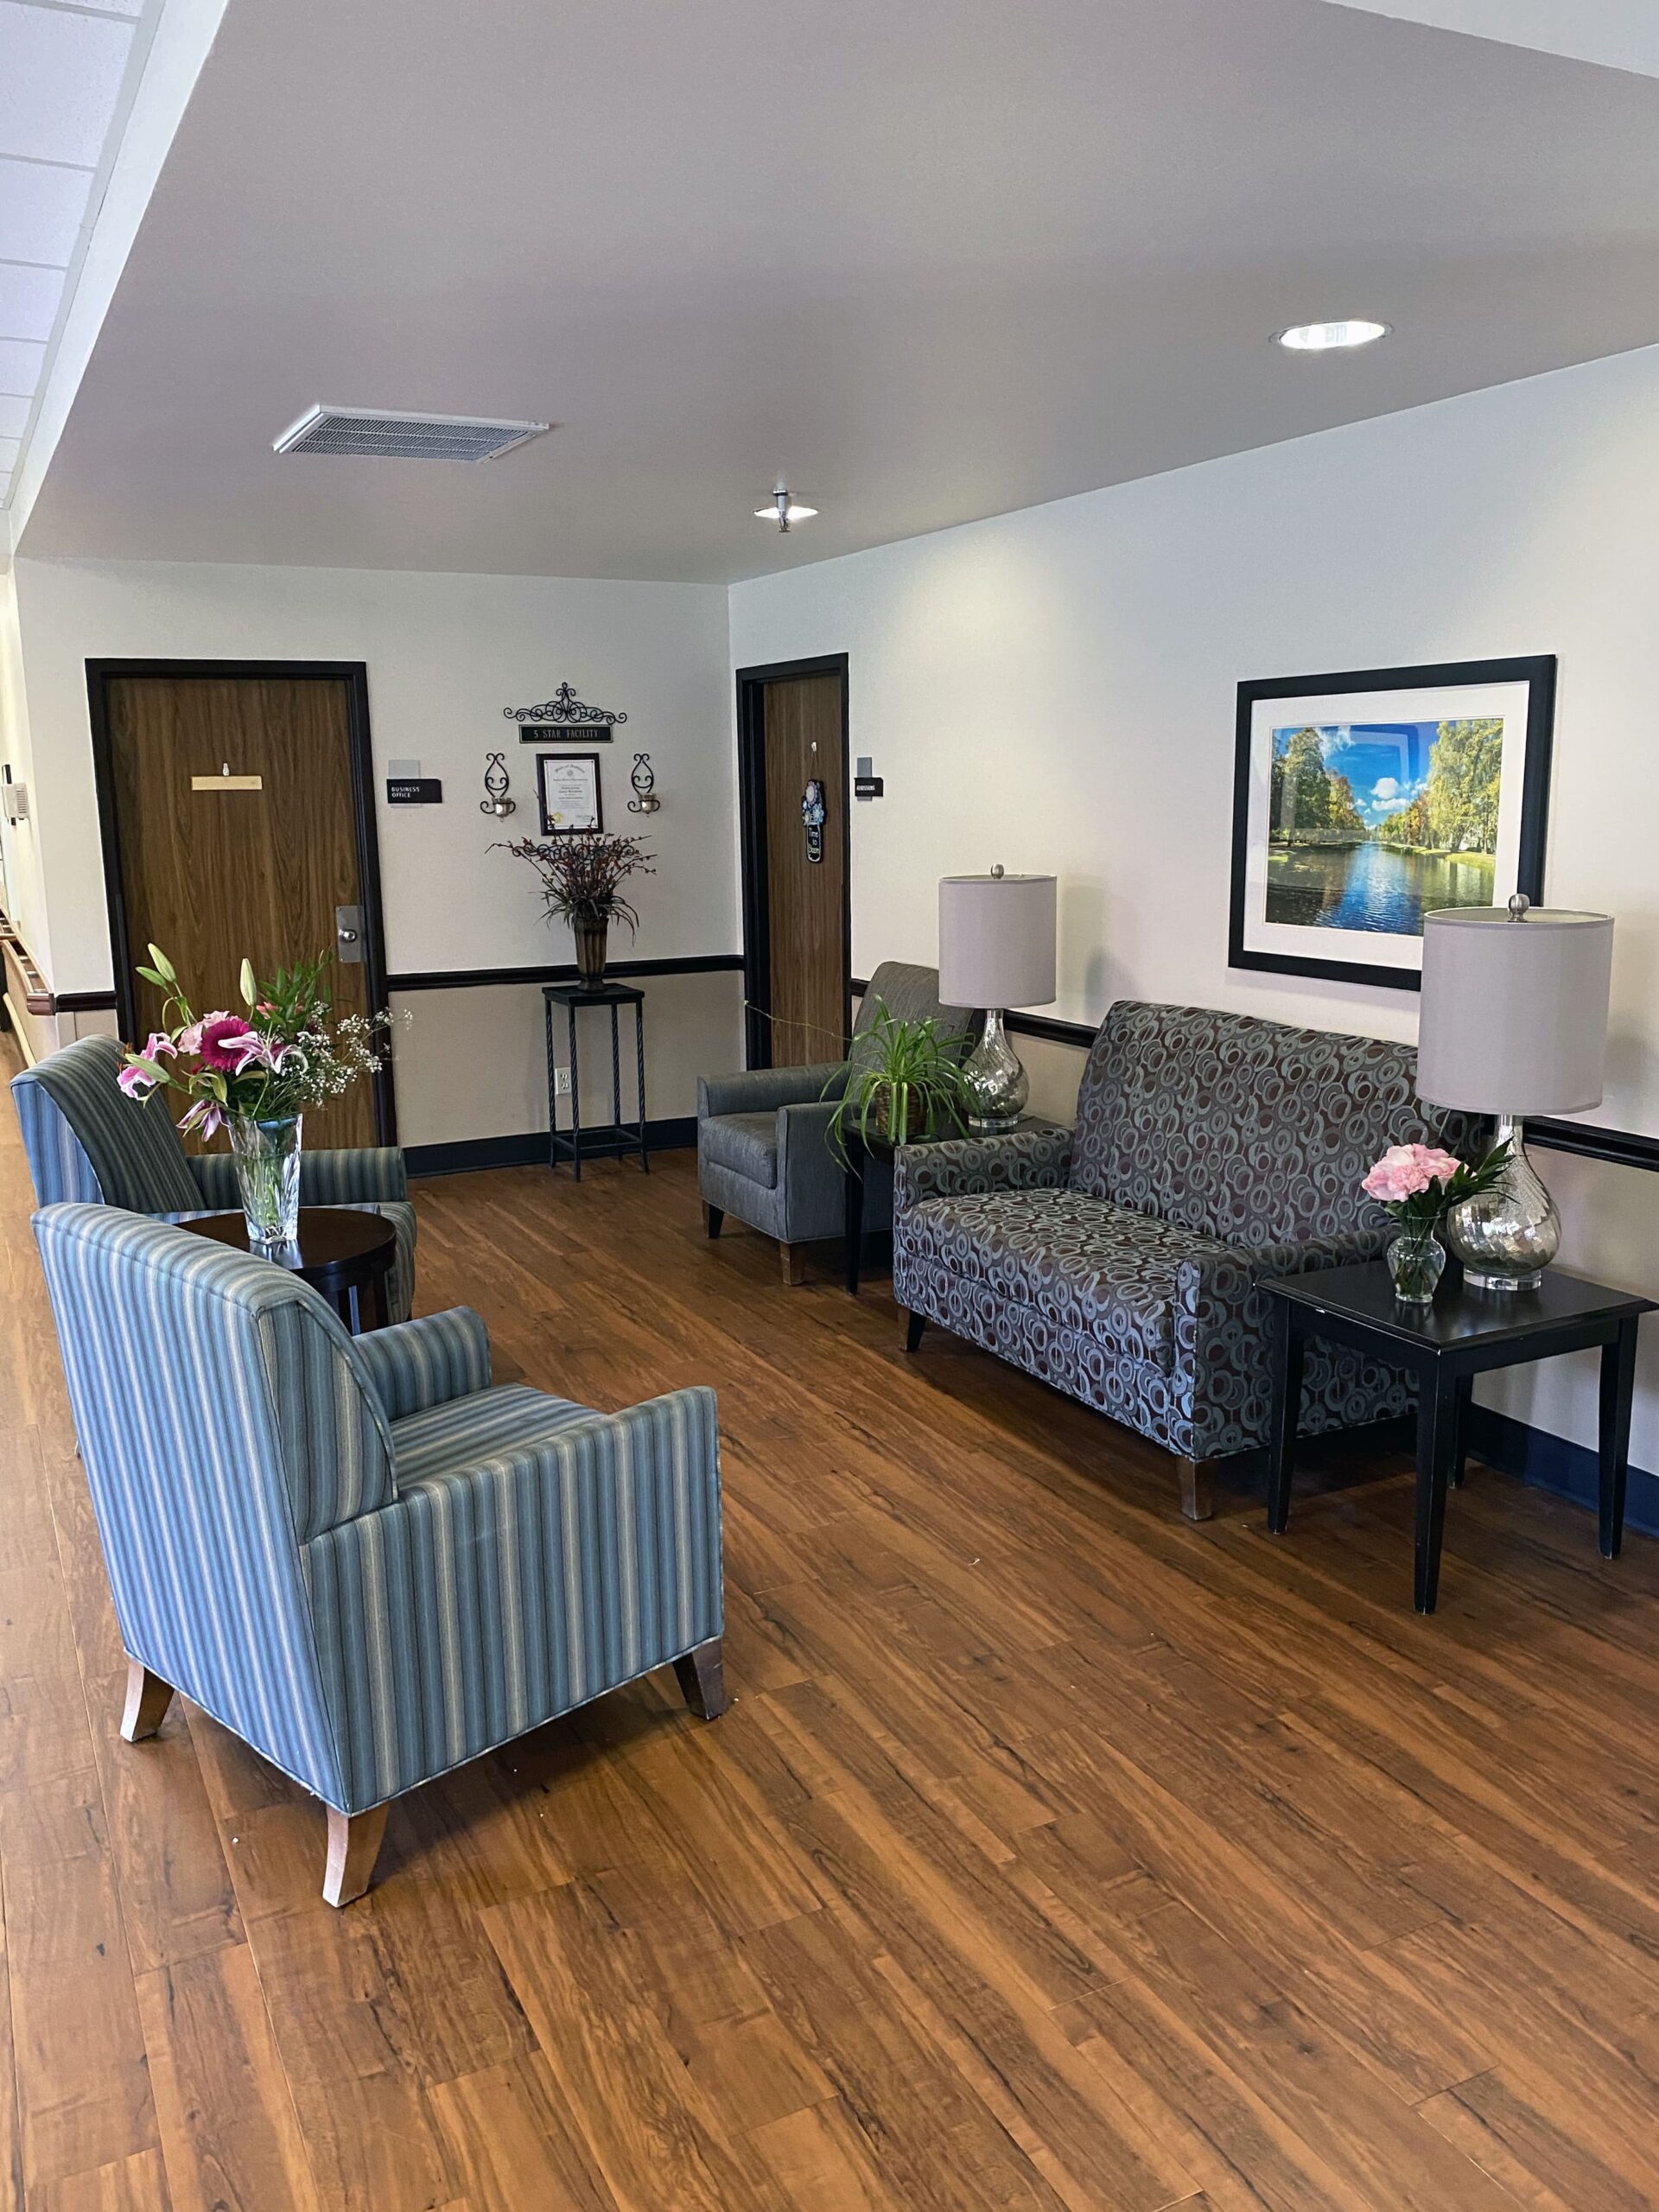 Brickyard Healthcare Woodlands Care Center reception area